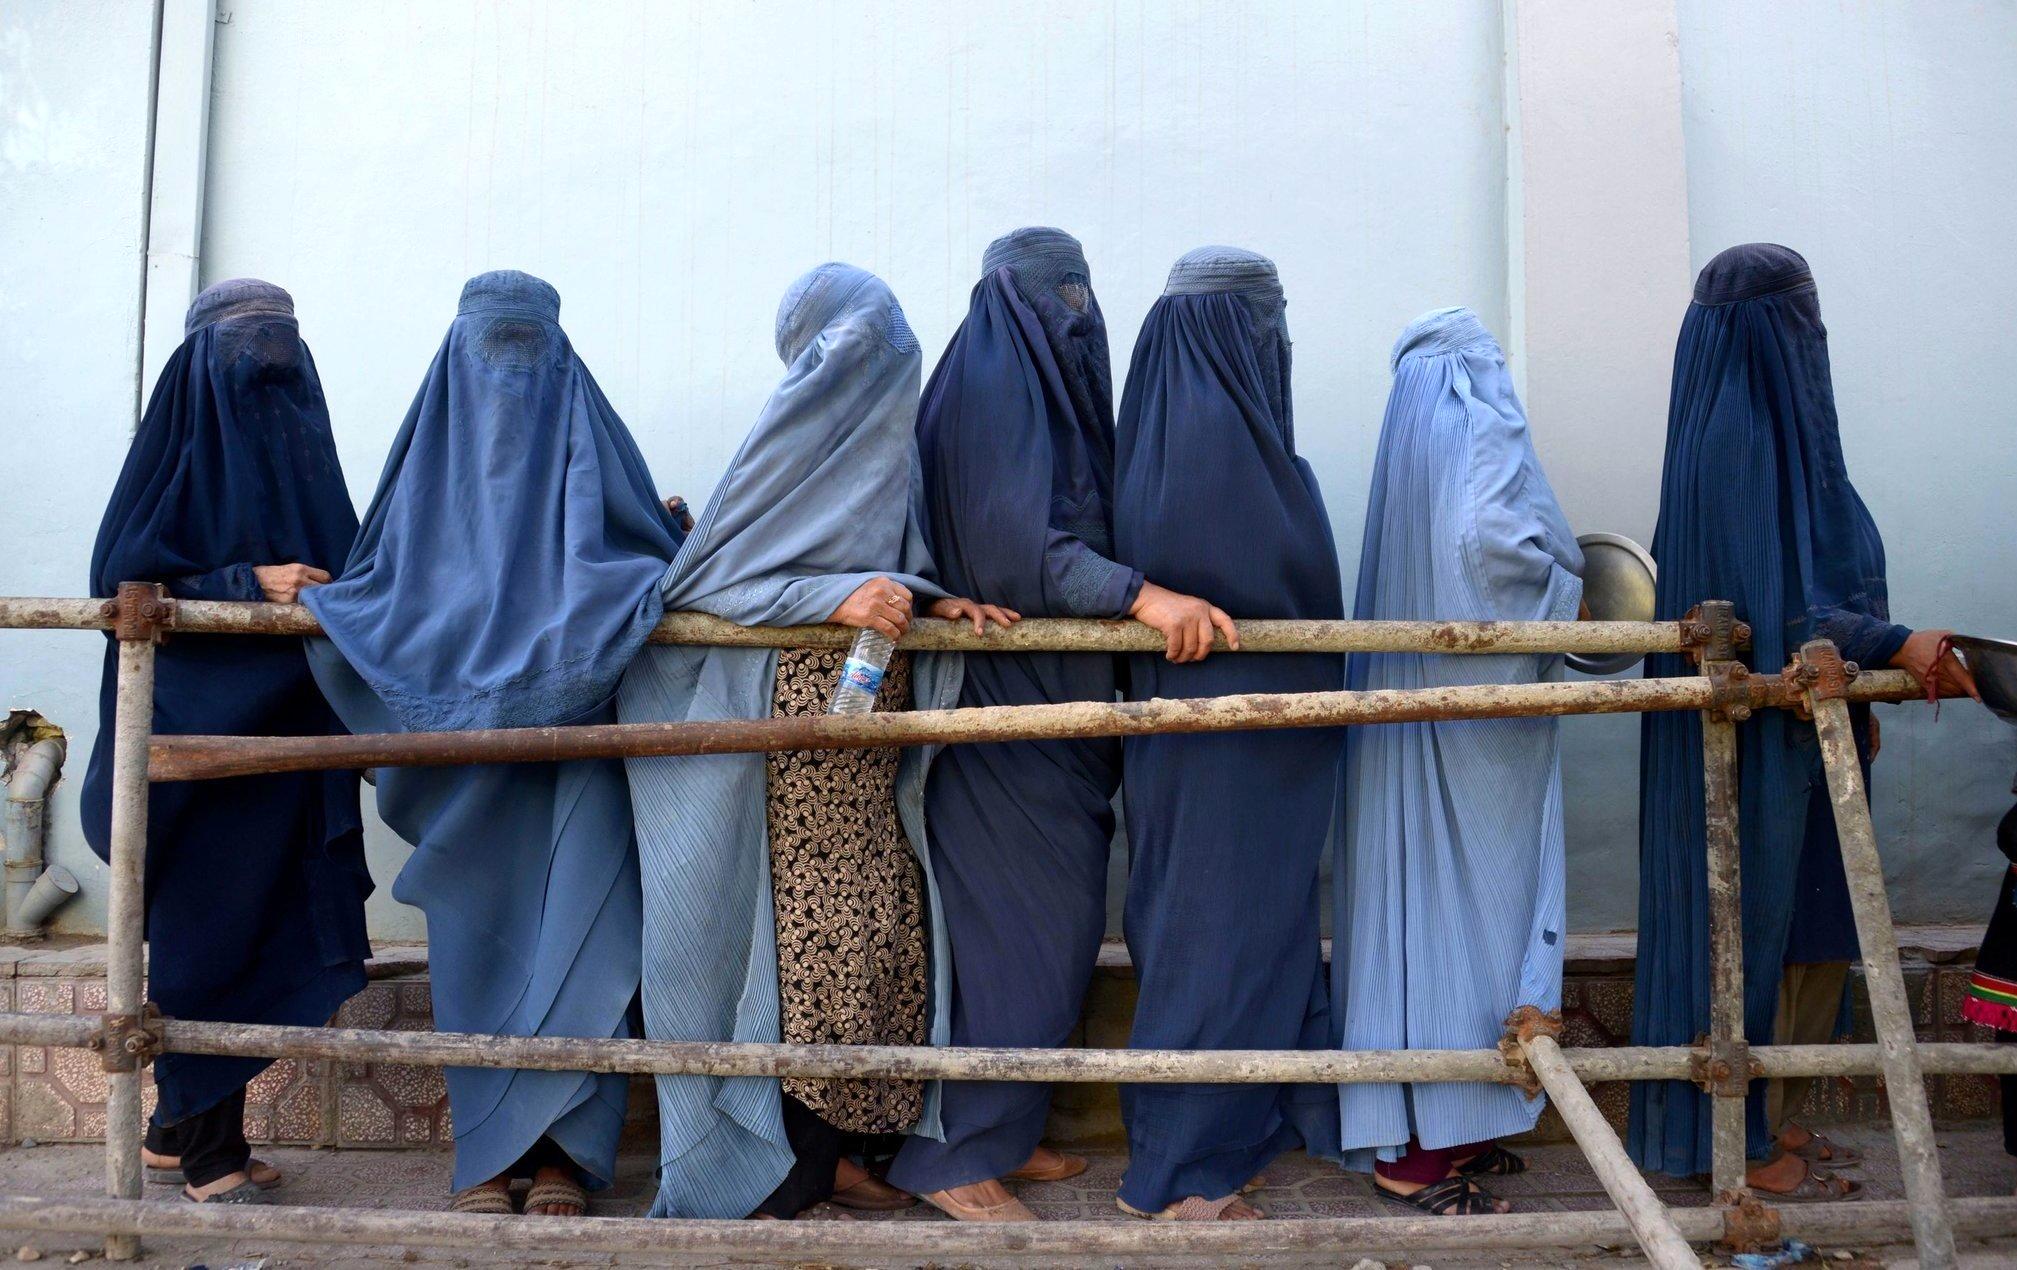 زن خوب از دید طالبان | معرفی الگوی موردنظر طالبان برای حجاب زنان + عکس